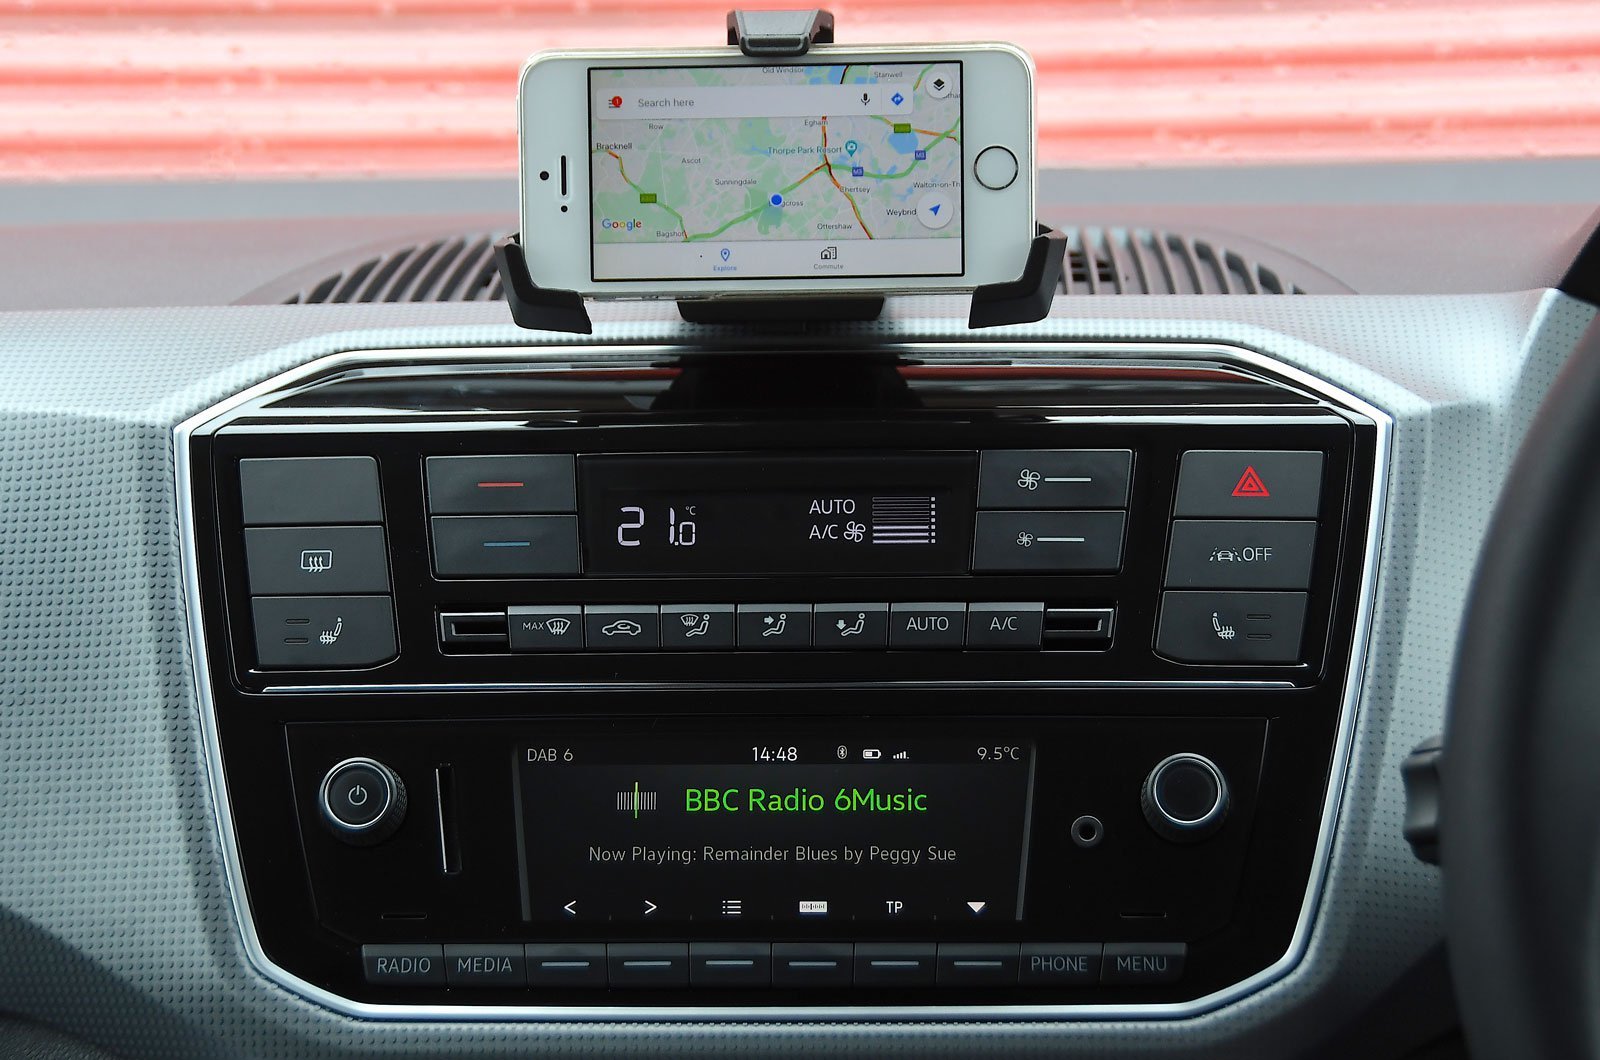 ТОП-5 мультимедийных систем, которые больше всего отвлекают водителей